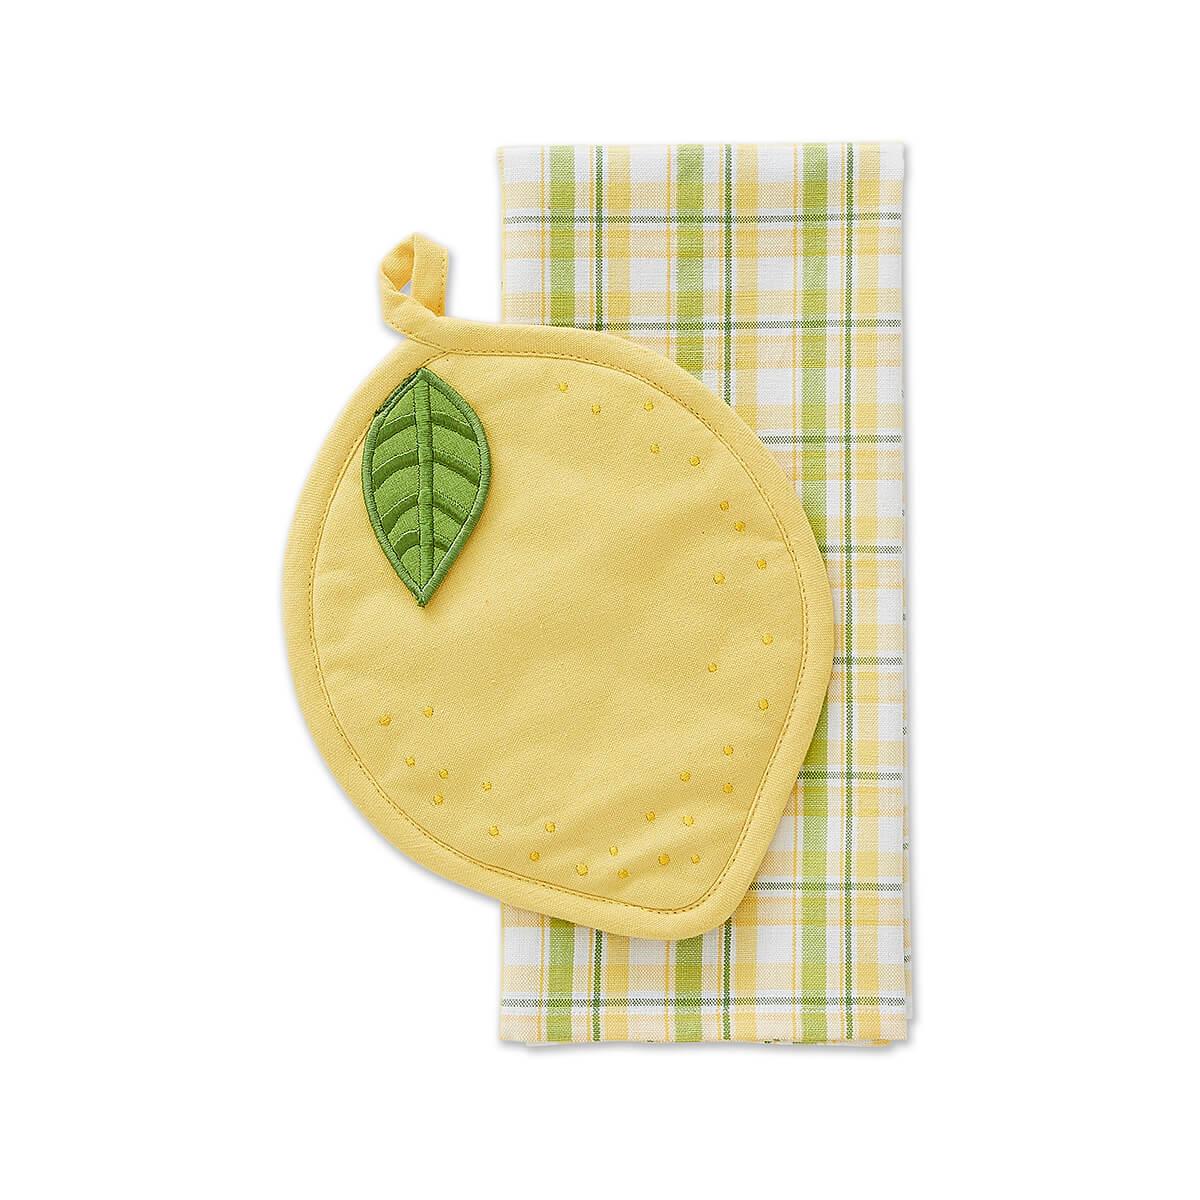  Lemon Embellished Gift Set